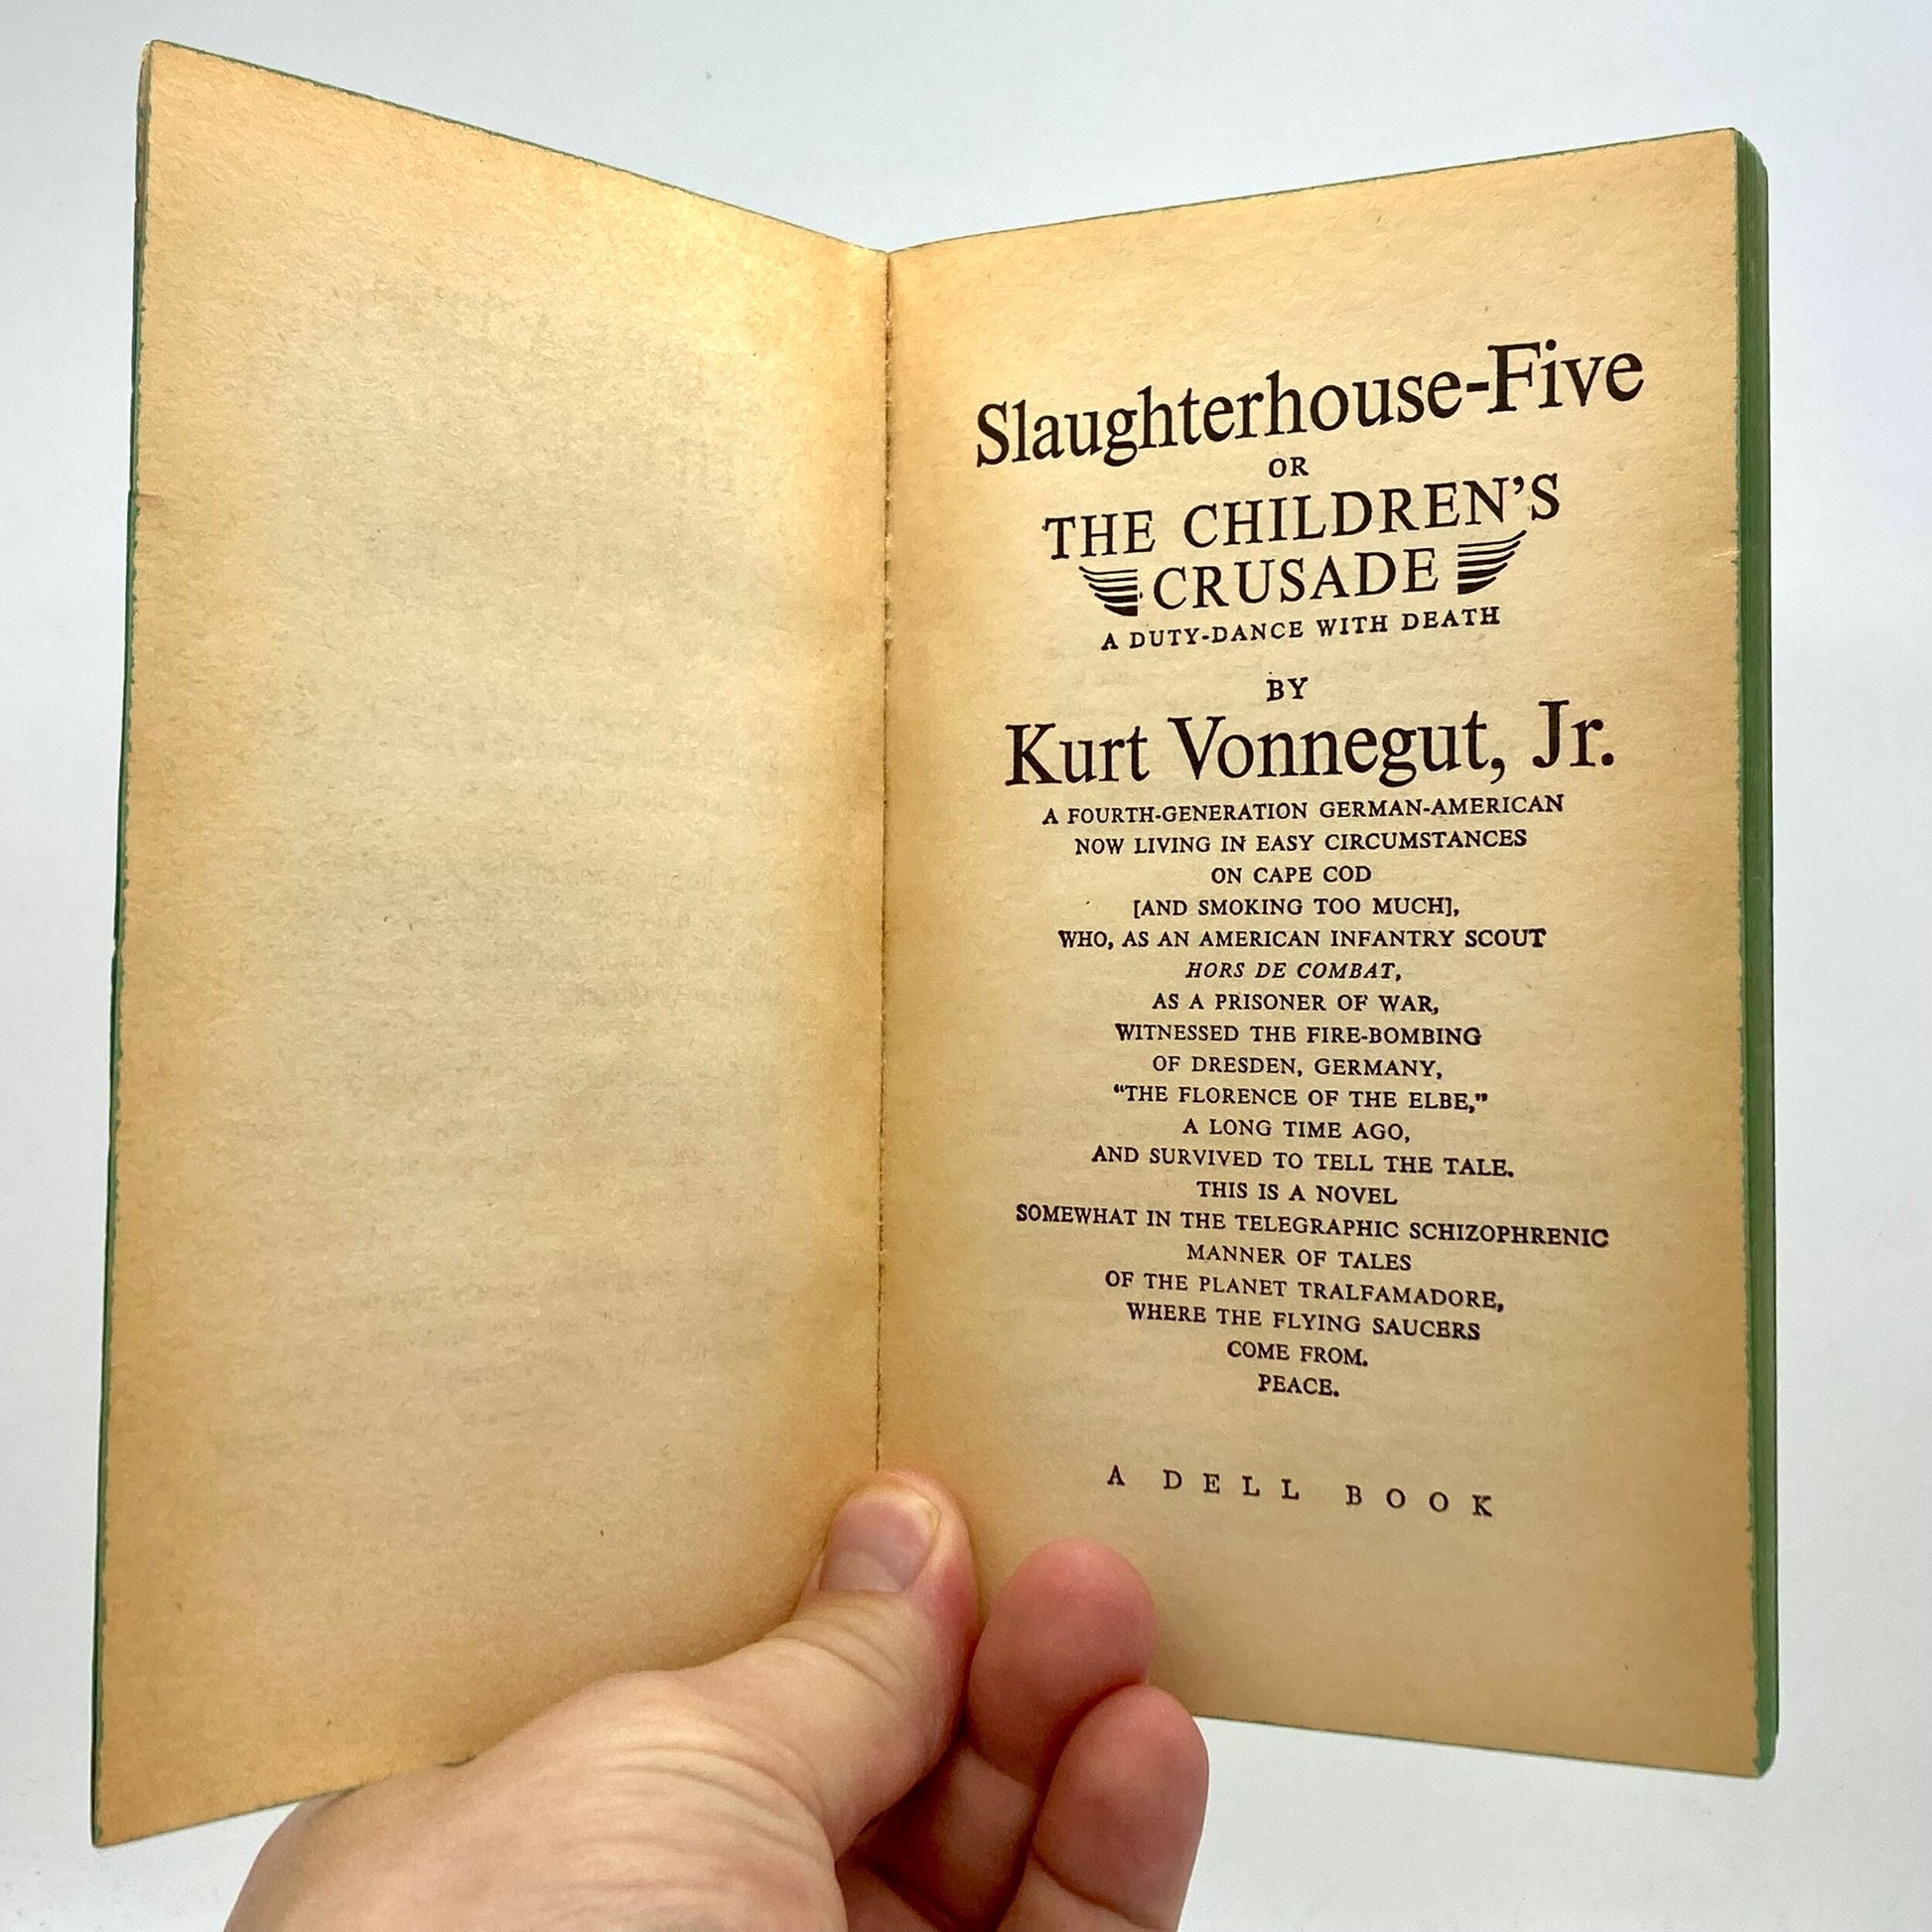 VONNEGUT, Kurt "Slaughter-House Five" [Dell, 1972] - Buzz Bookstore